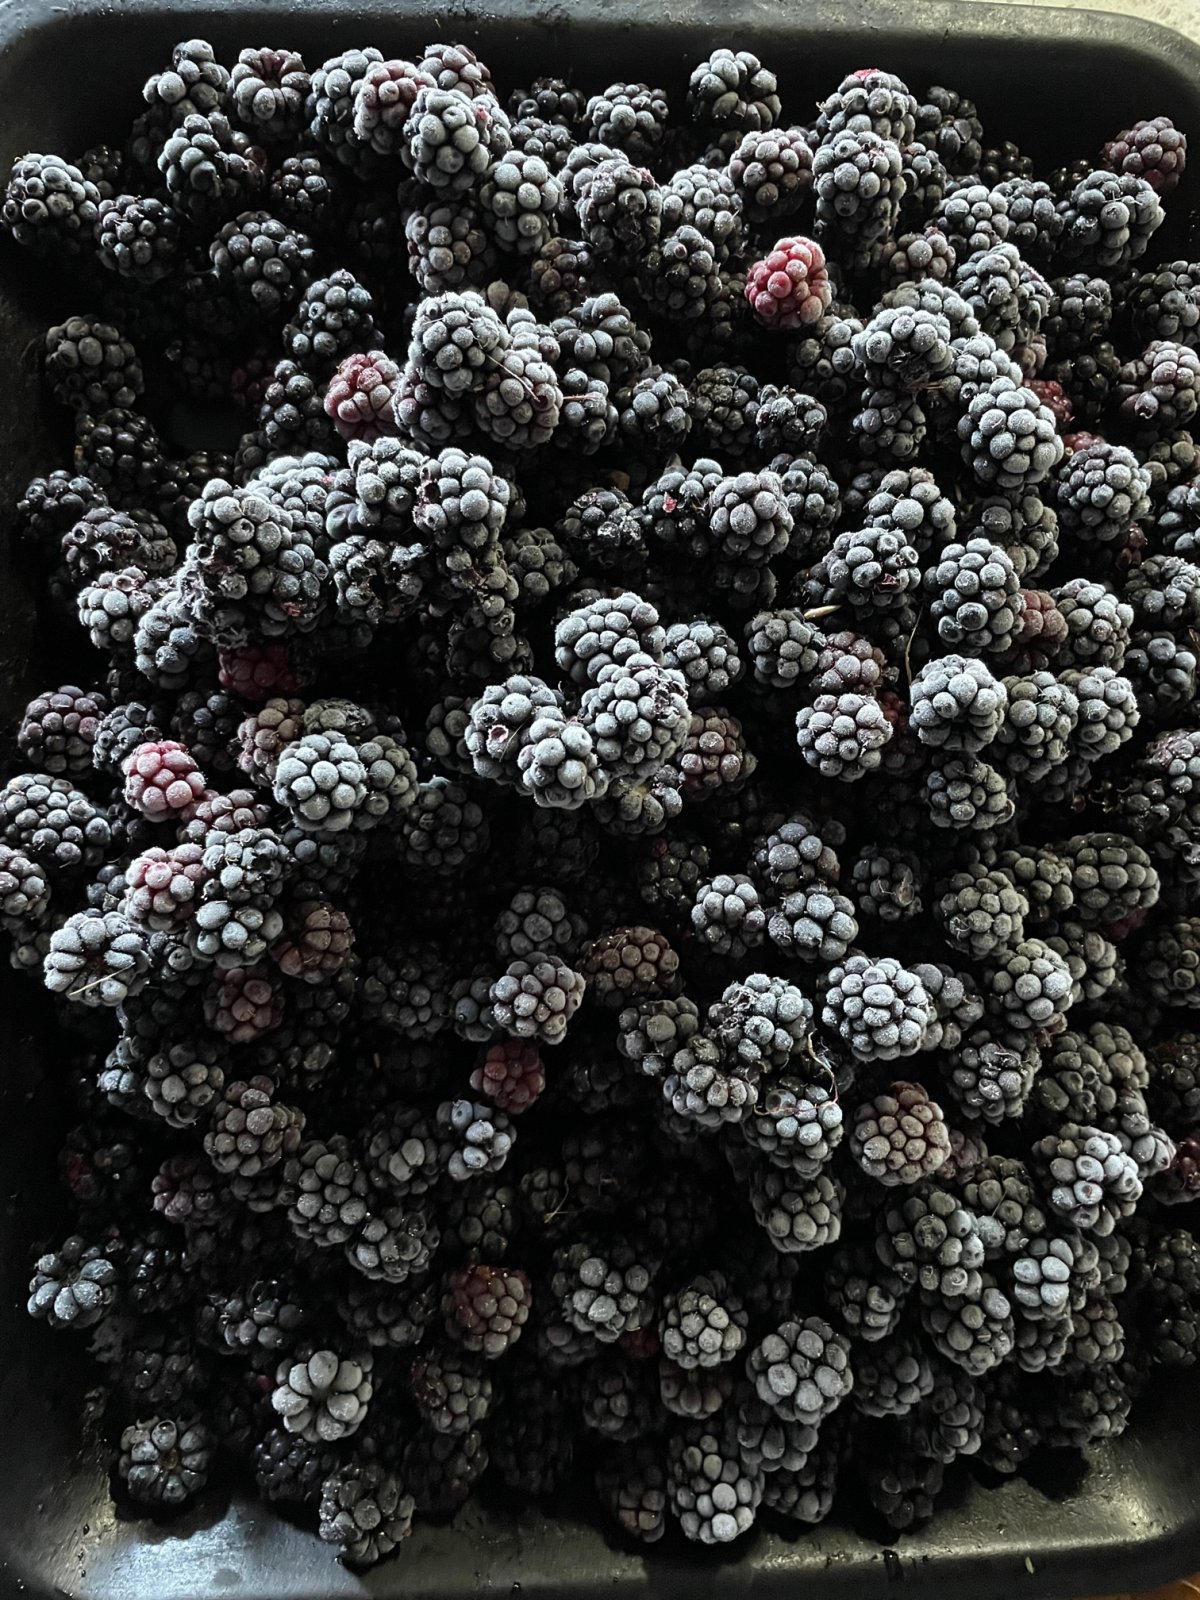 Frozen berries 8:14.jpg